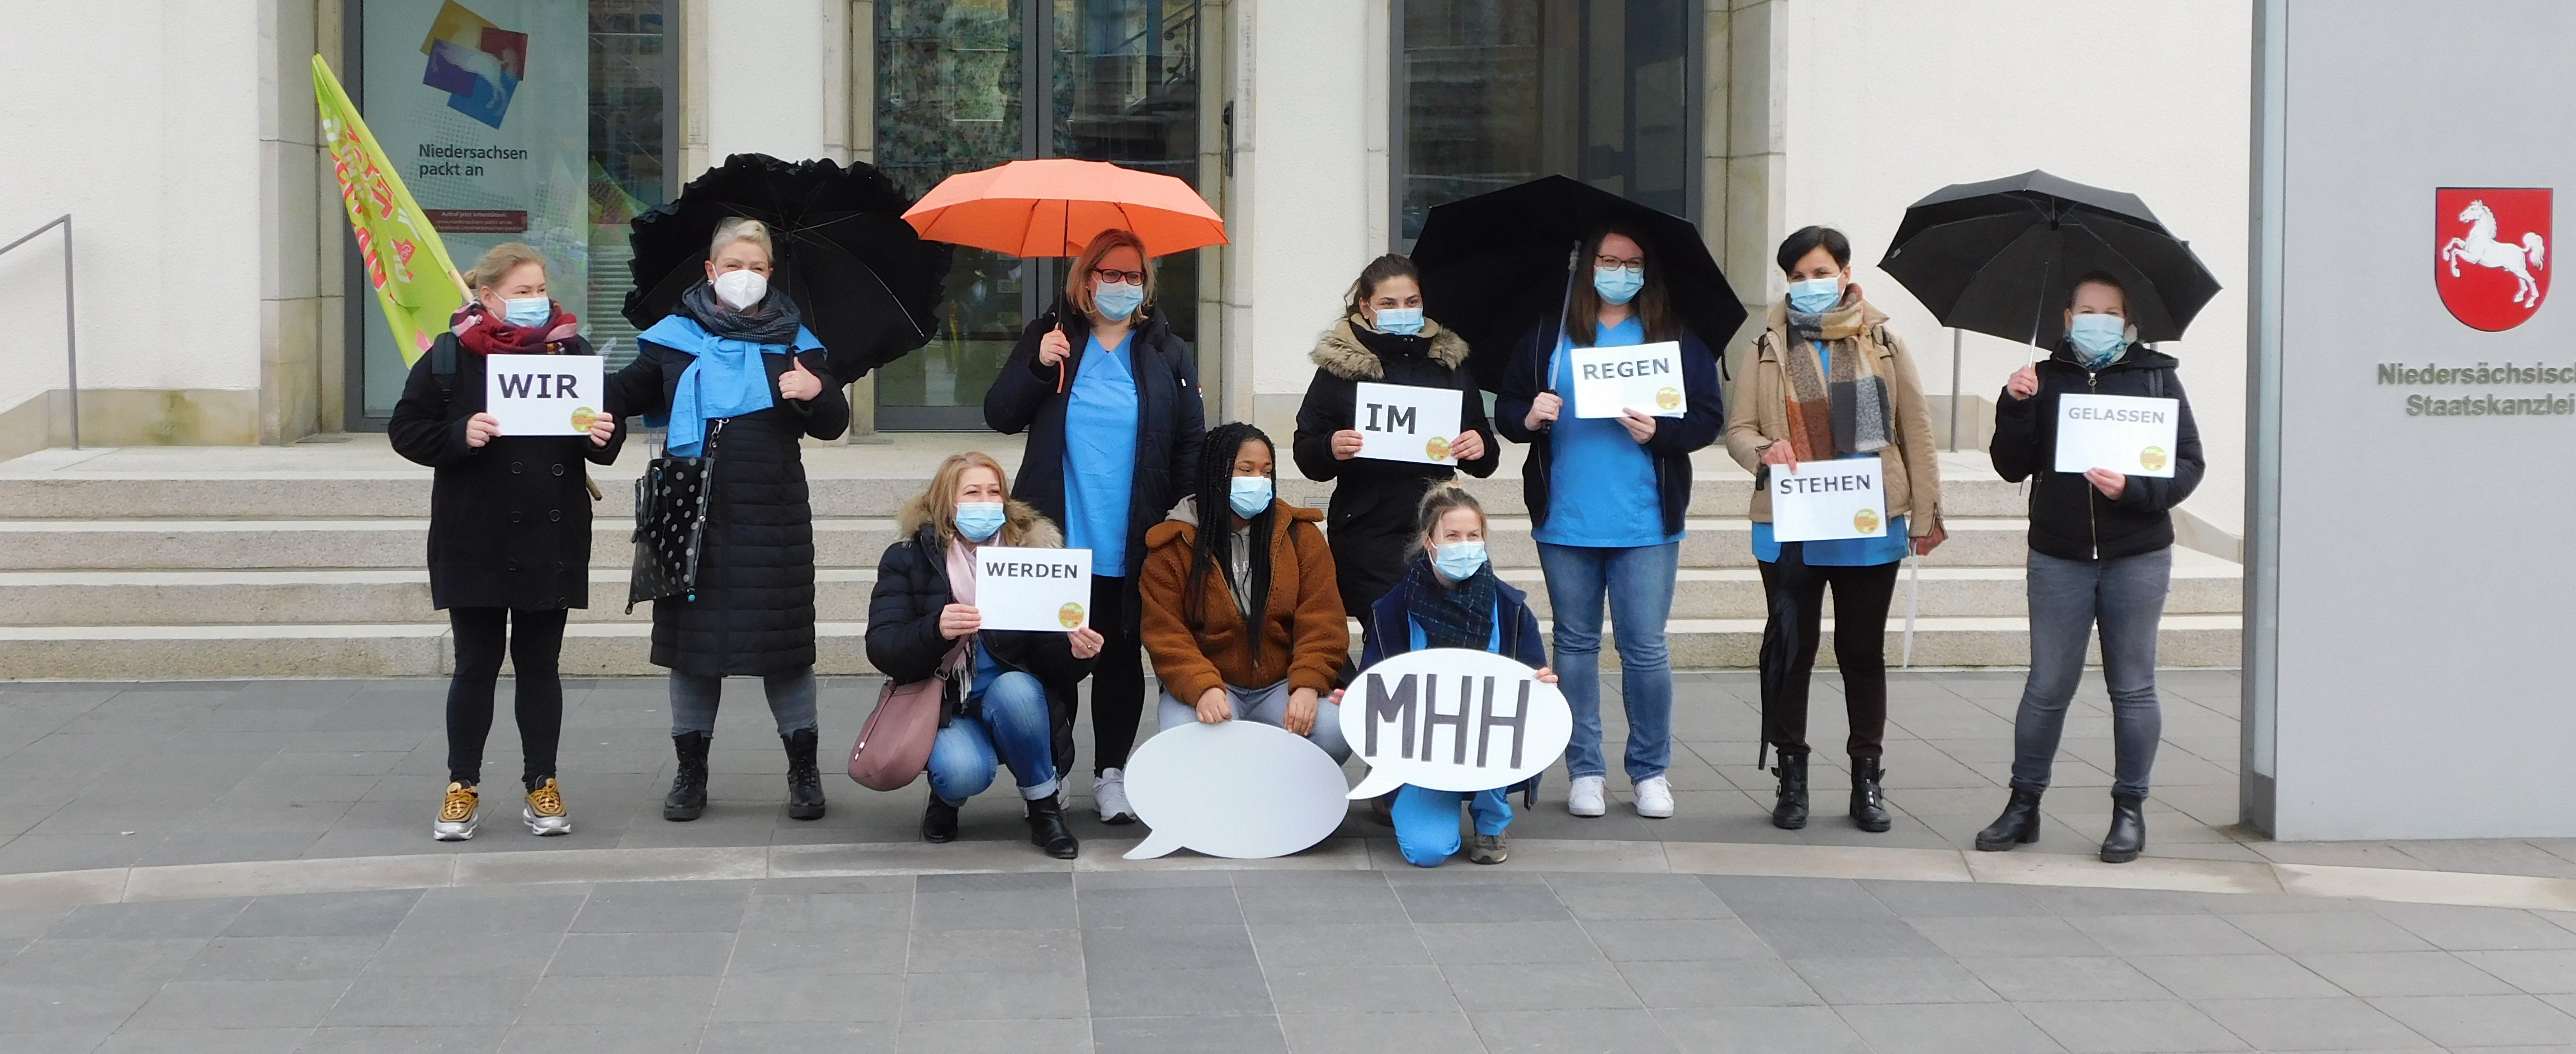 Mehrere Kolleg*innen aus der Pflege der MHH stehen mit Regenschirmen und Sprechblasen vor der Staatskanzlei in Hannover